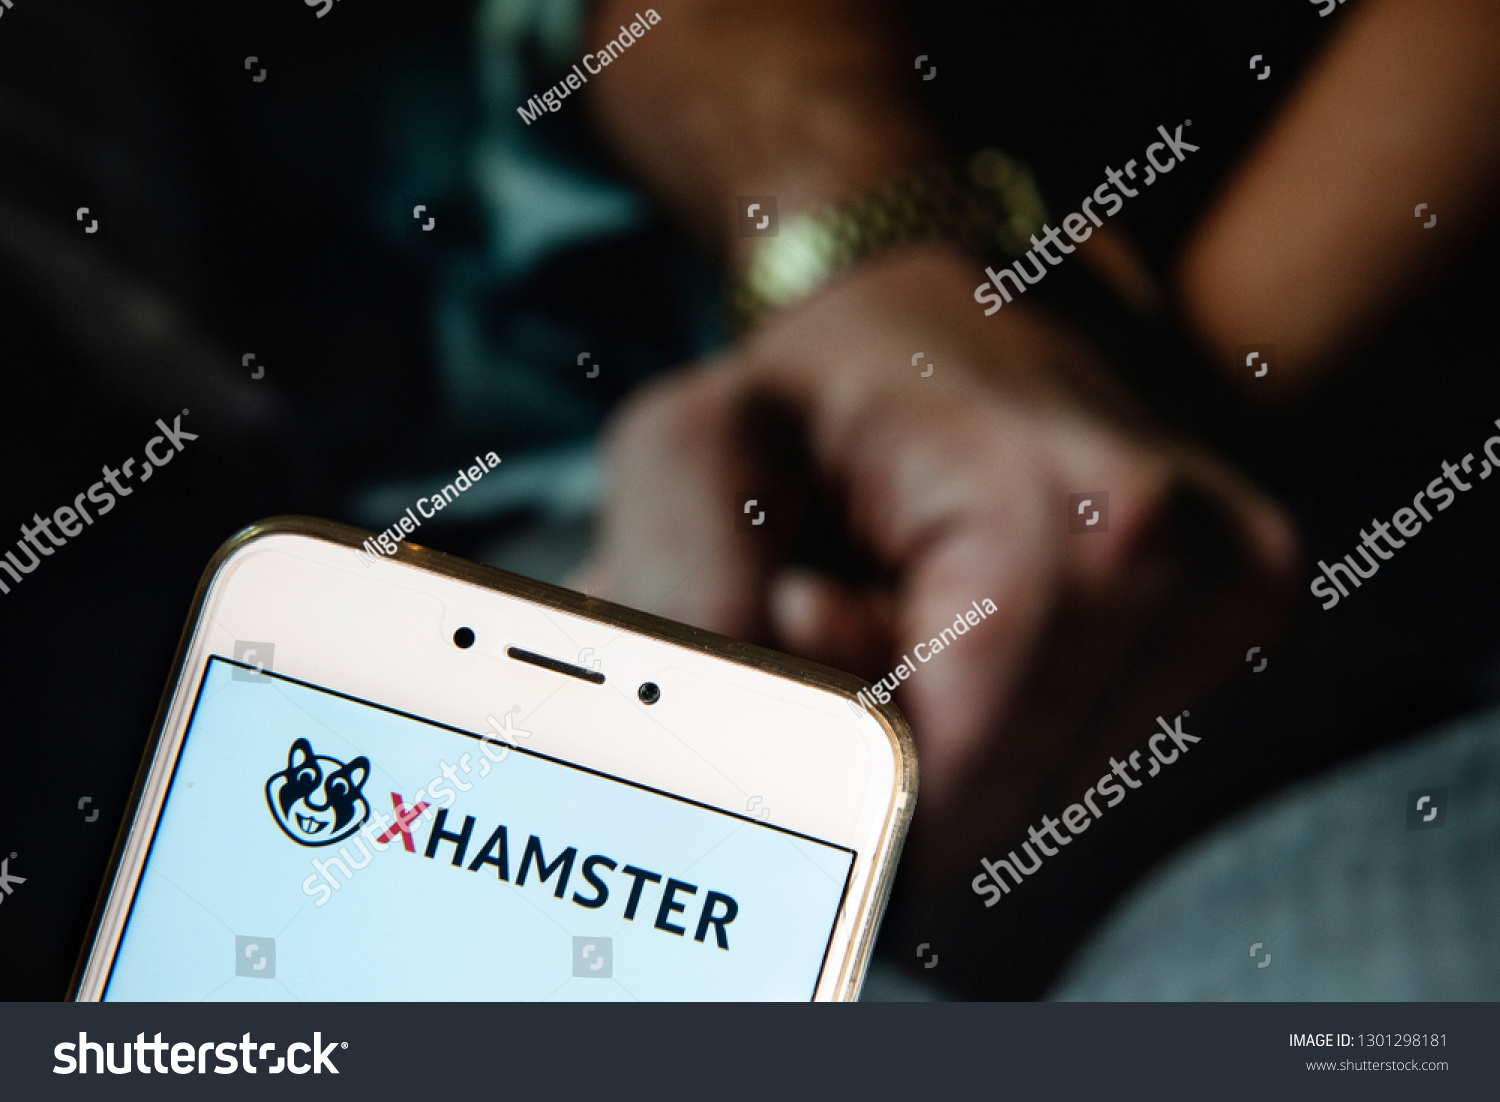 Xhamster's Mobile